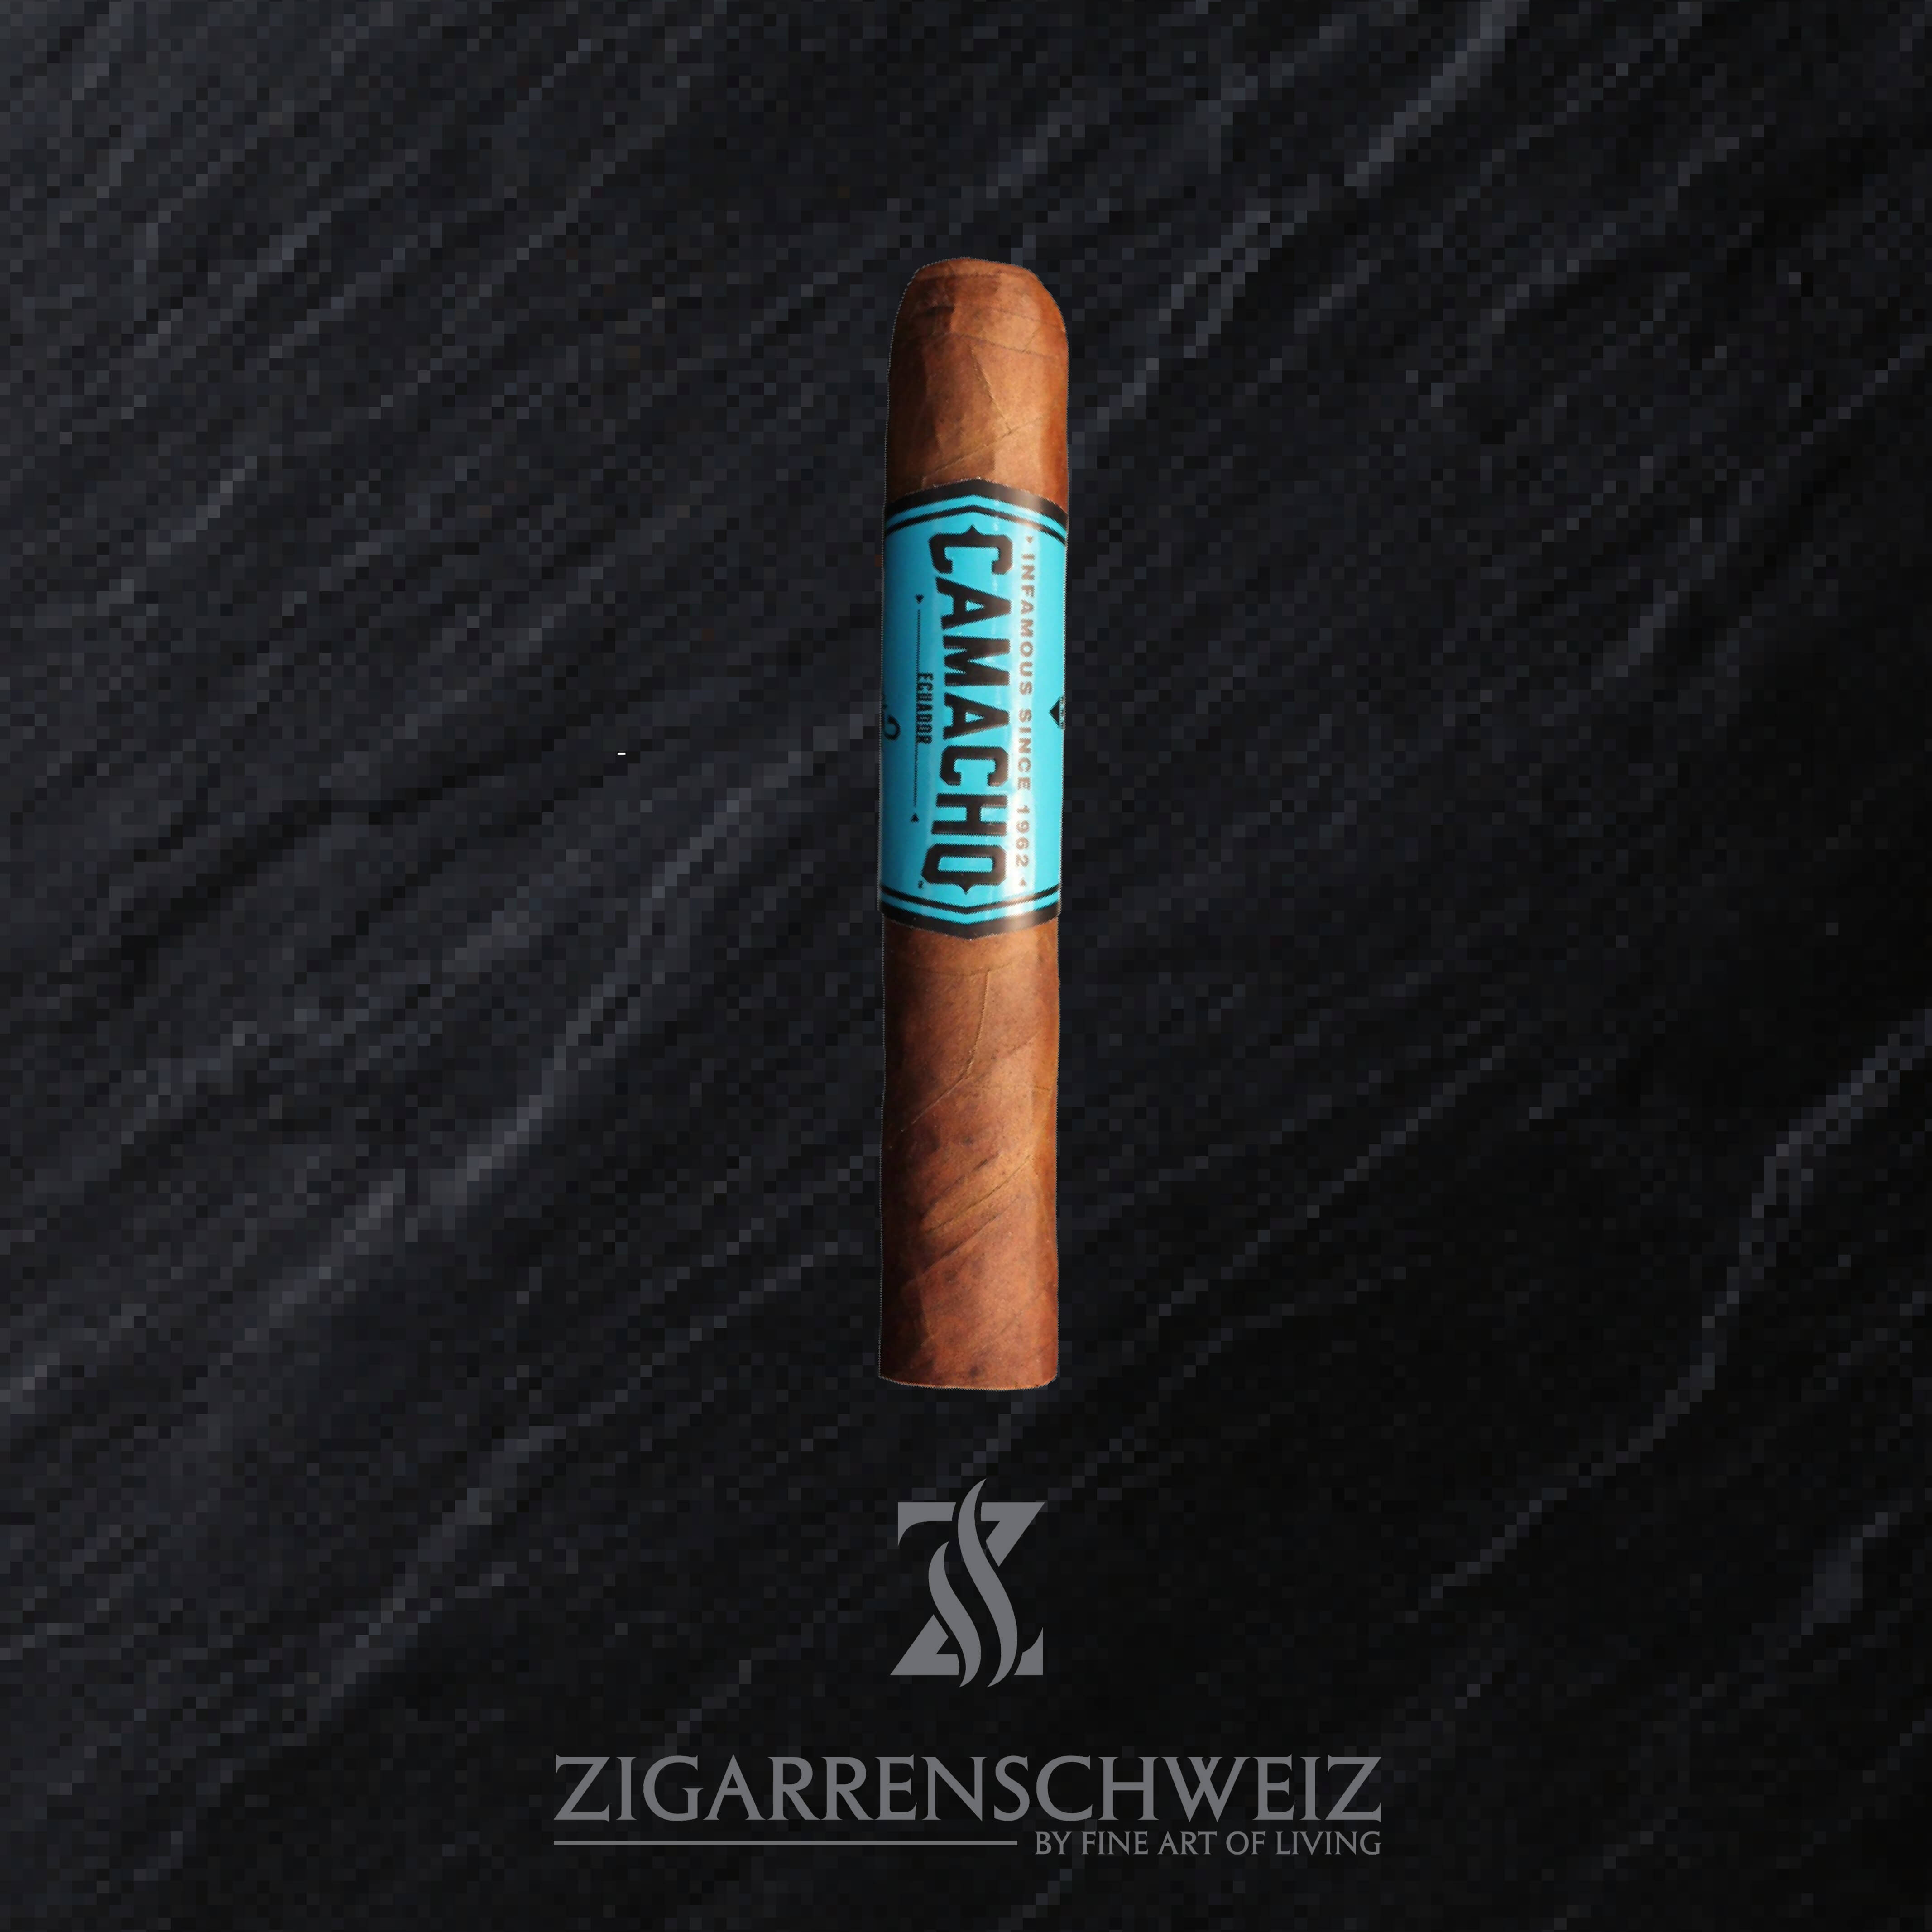 Camacho Ecuador Robusto Zigarren Schweiz